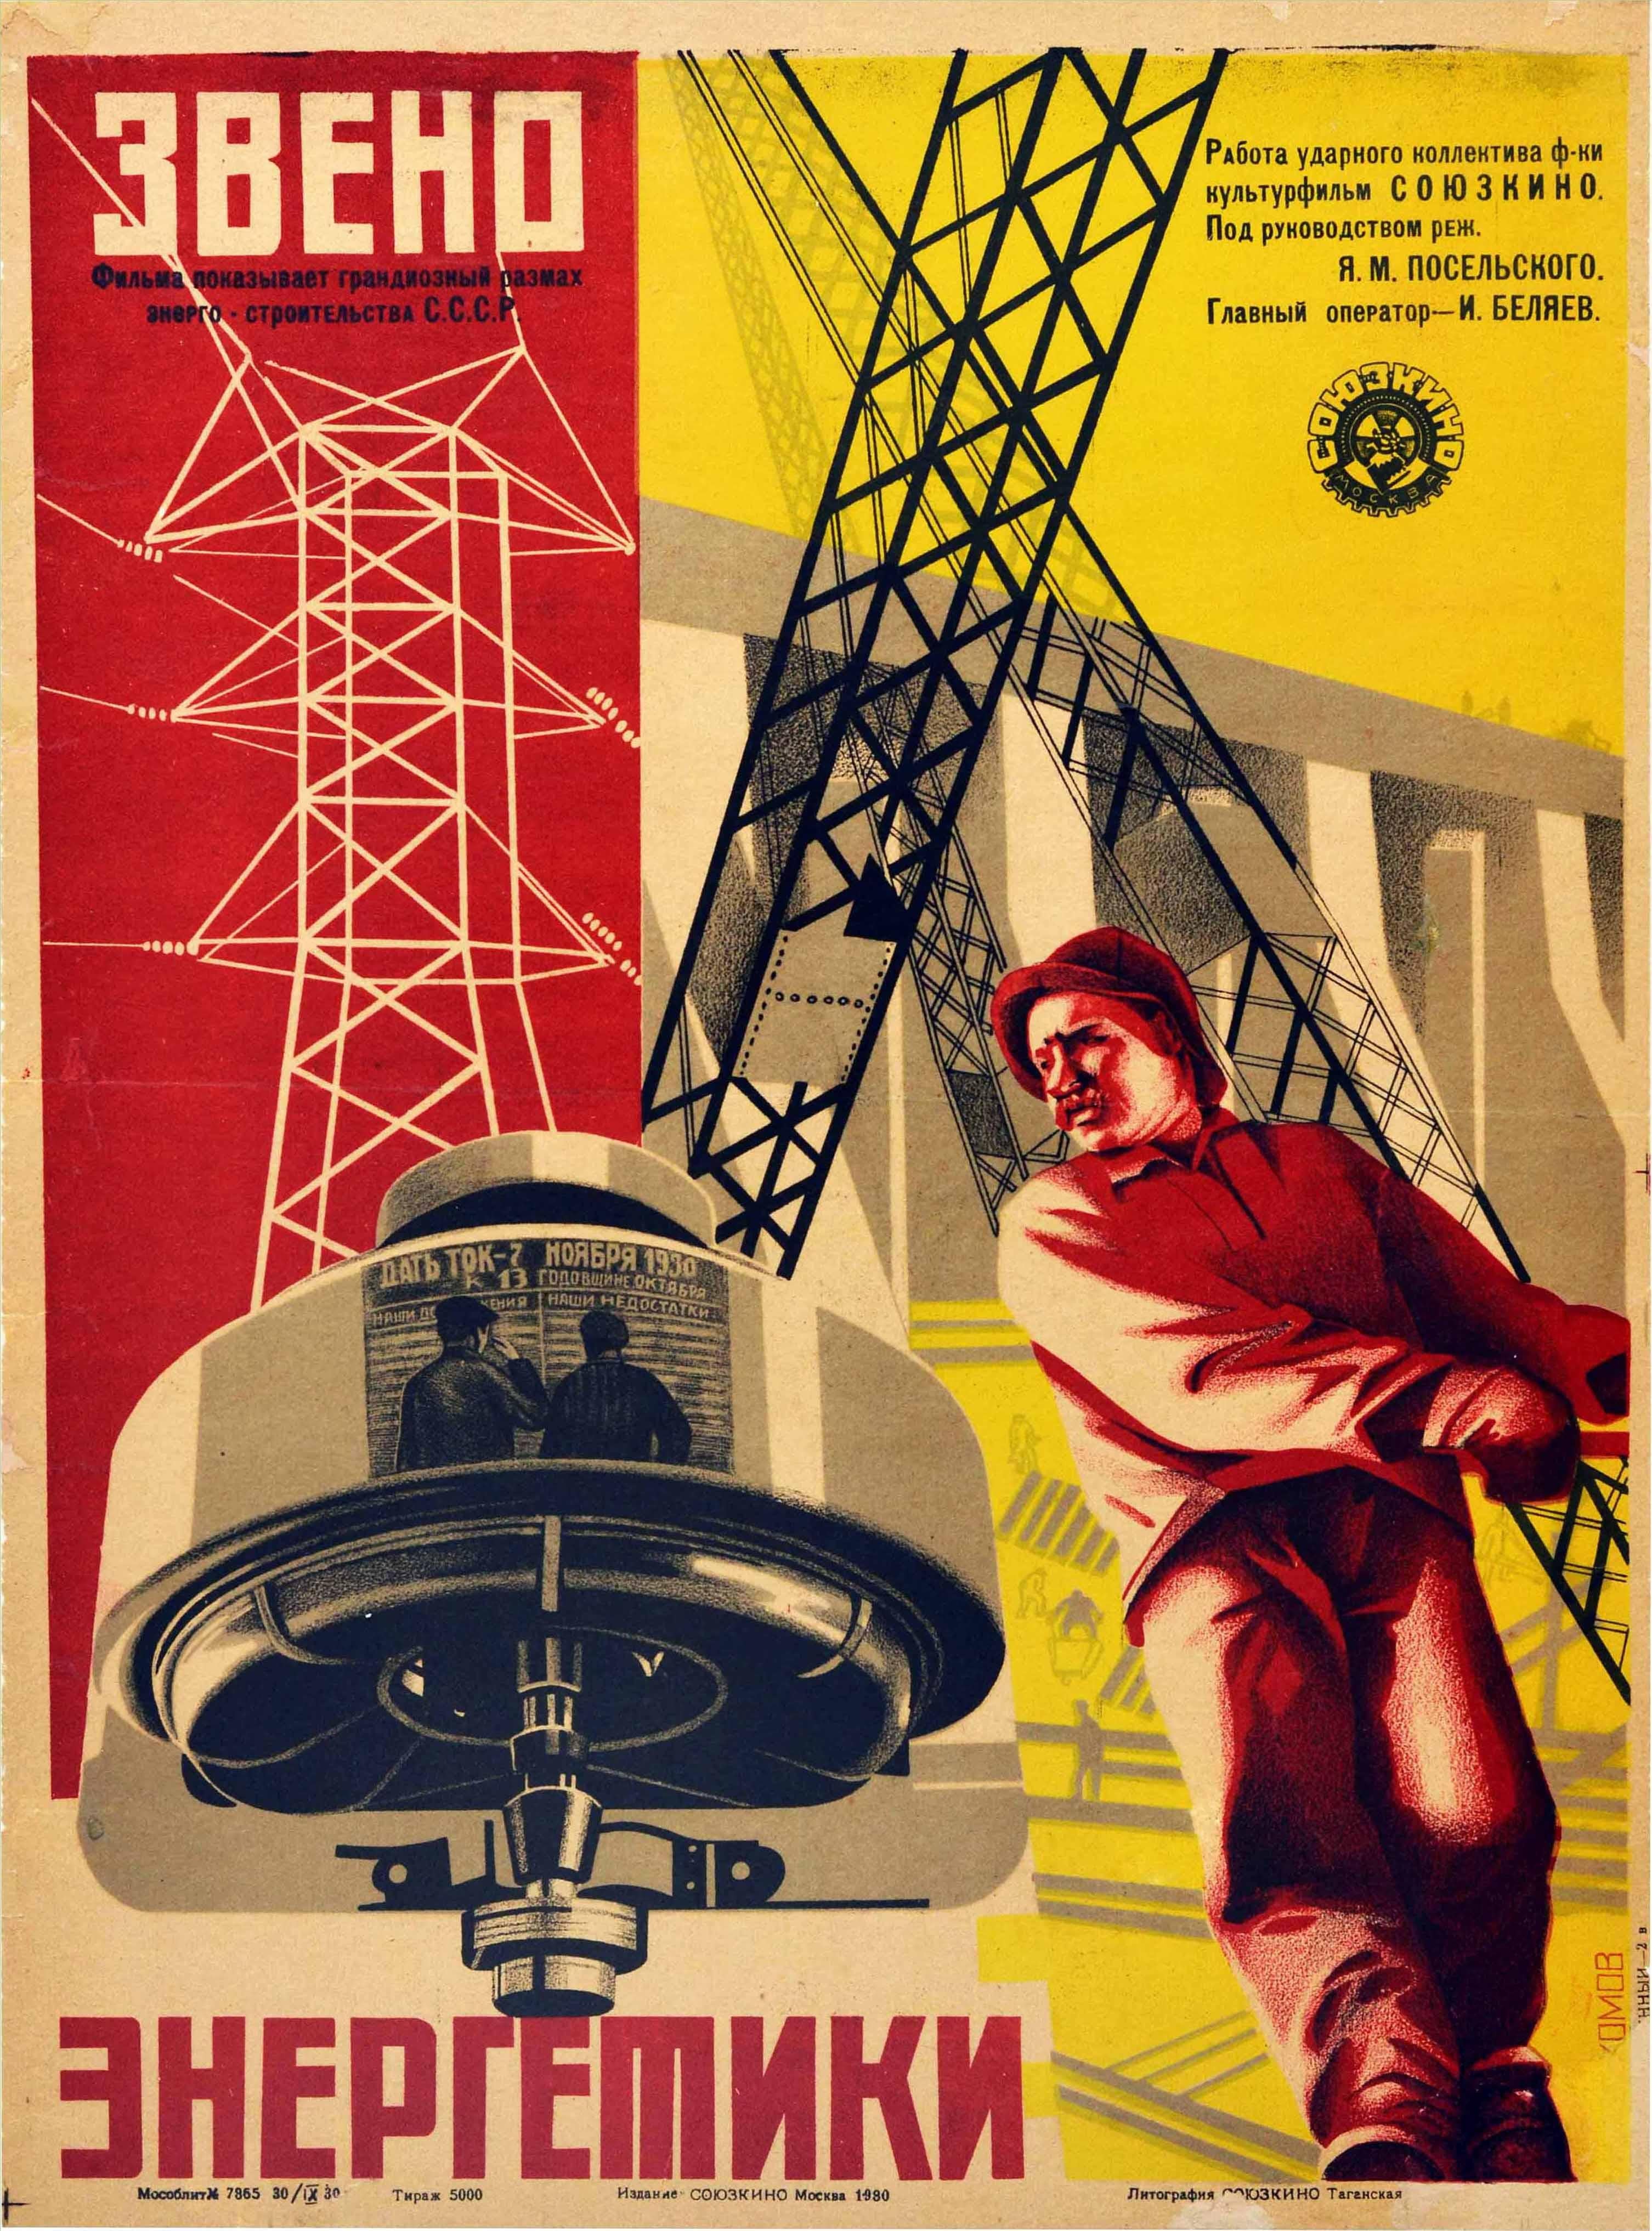 Originales sowjetisches Filmplakat für den Dokumentarfilm Energy Link / ????? ?????????? aus dem Jahr 1930, der das grandiose Ausmaß des Energieaufbaus in der UdSSR unter der Regie von Jakow Poselskij zeigt und vom Sojuskino-Filmstudio (dem